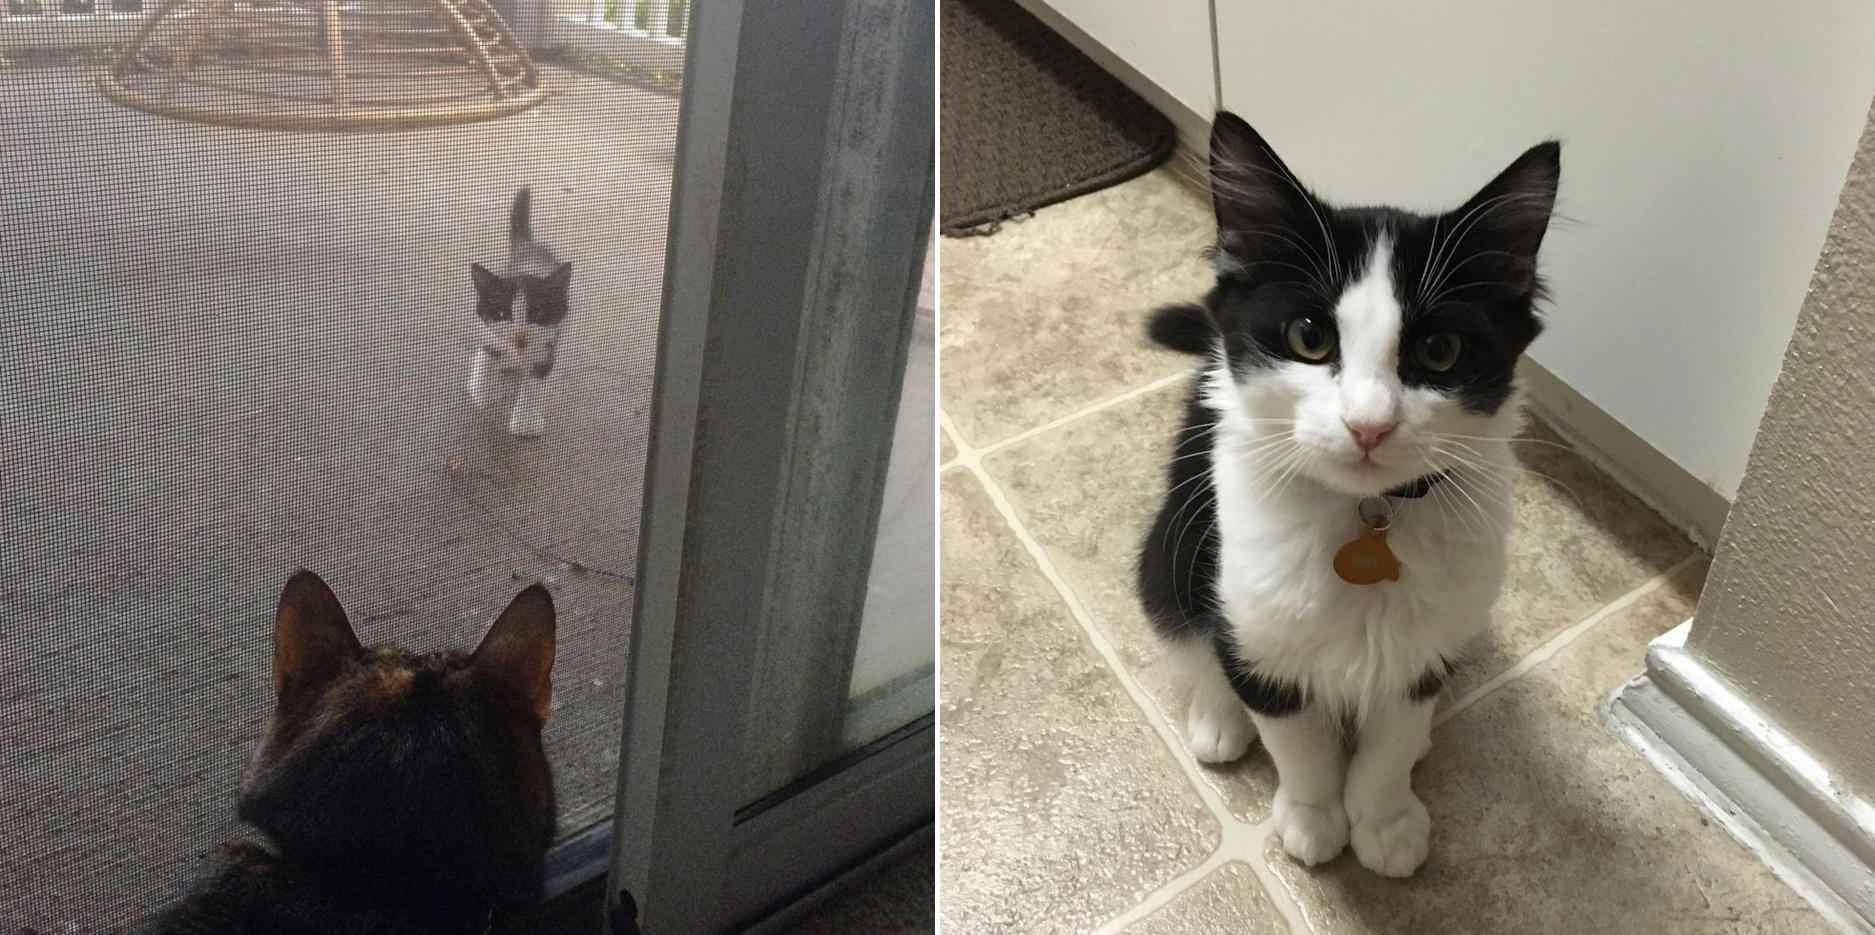 ลูกแมวตัวน้อยมาร้อง ‘เมี้ยว’ อยู่หน้าบ้าน ผ่านไปสองปีอยู่ดีกินดี จนกลายเป็นเจ้าของบ้านไปแล้ว